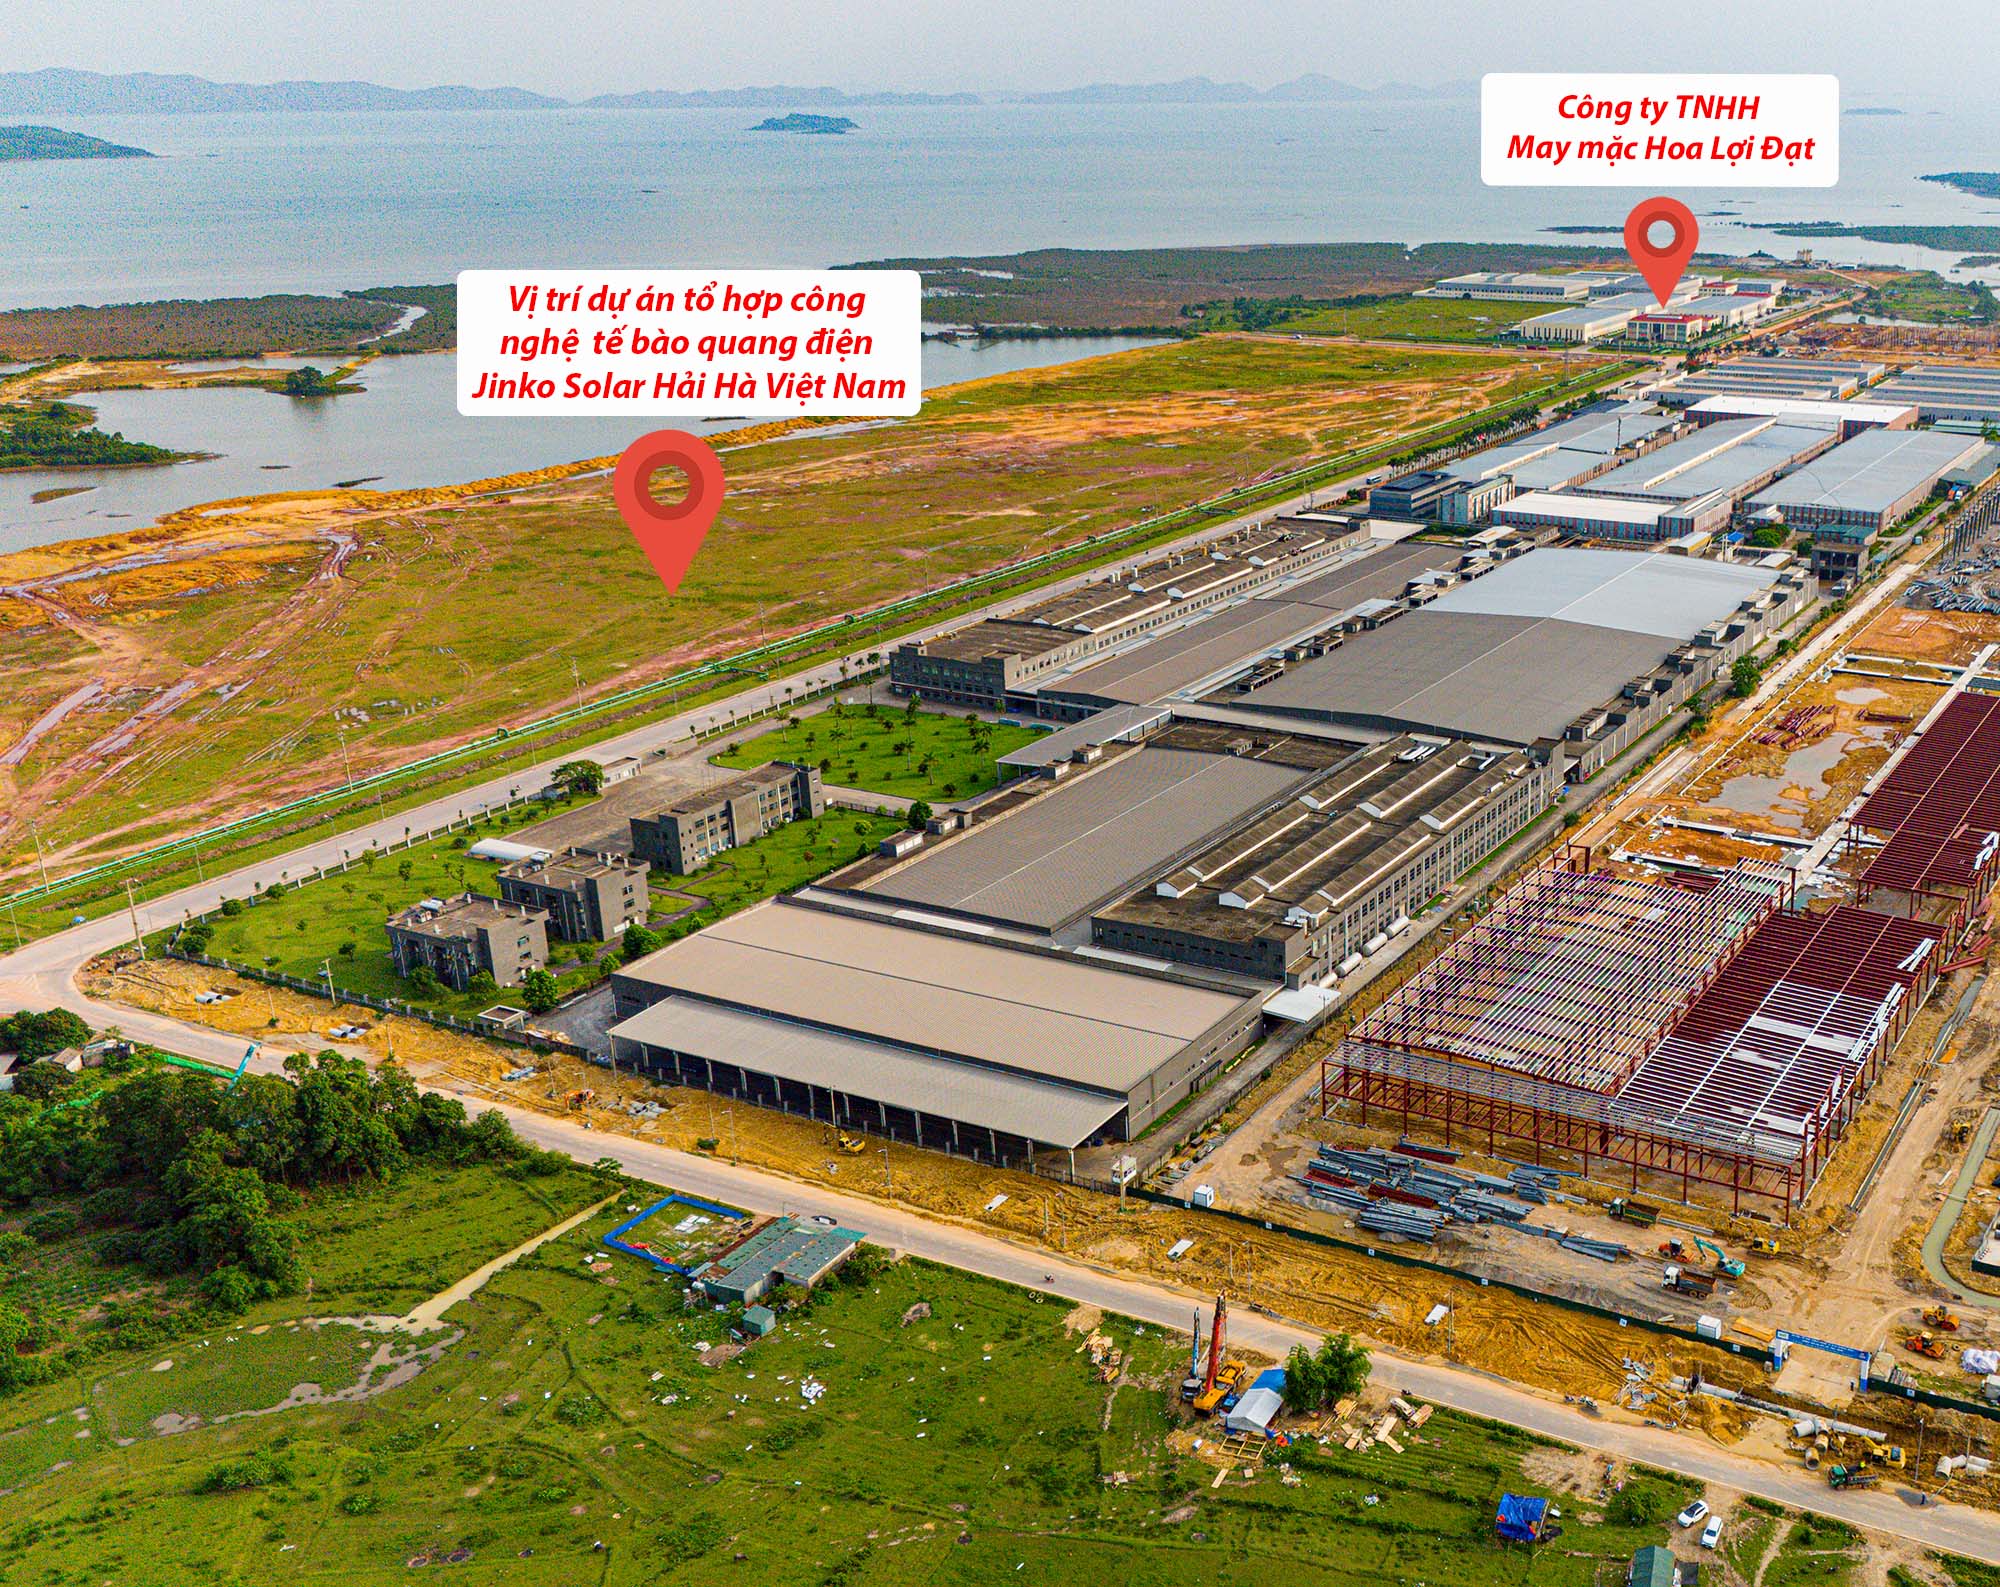 Toàn cảnh 3 dự án trị giá 2,6 tỷ USD của ông lớn Trung Quốc ở Quảng Ninh- Ảnh 8.